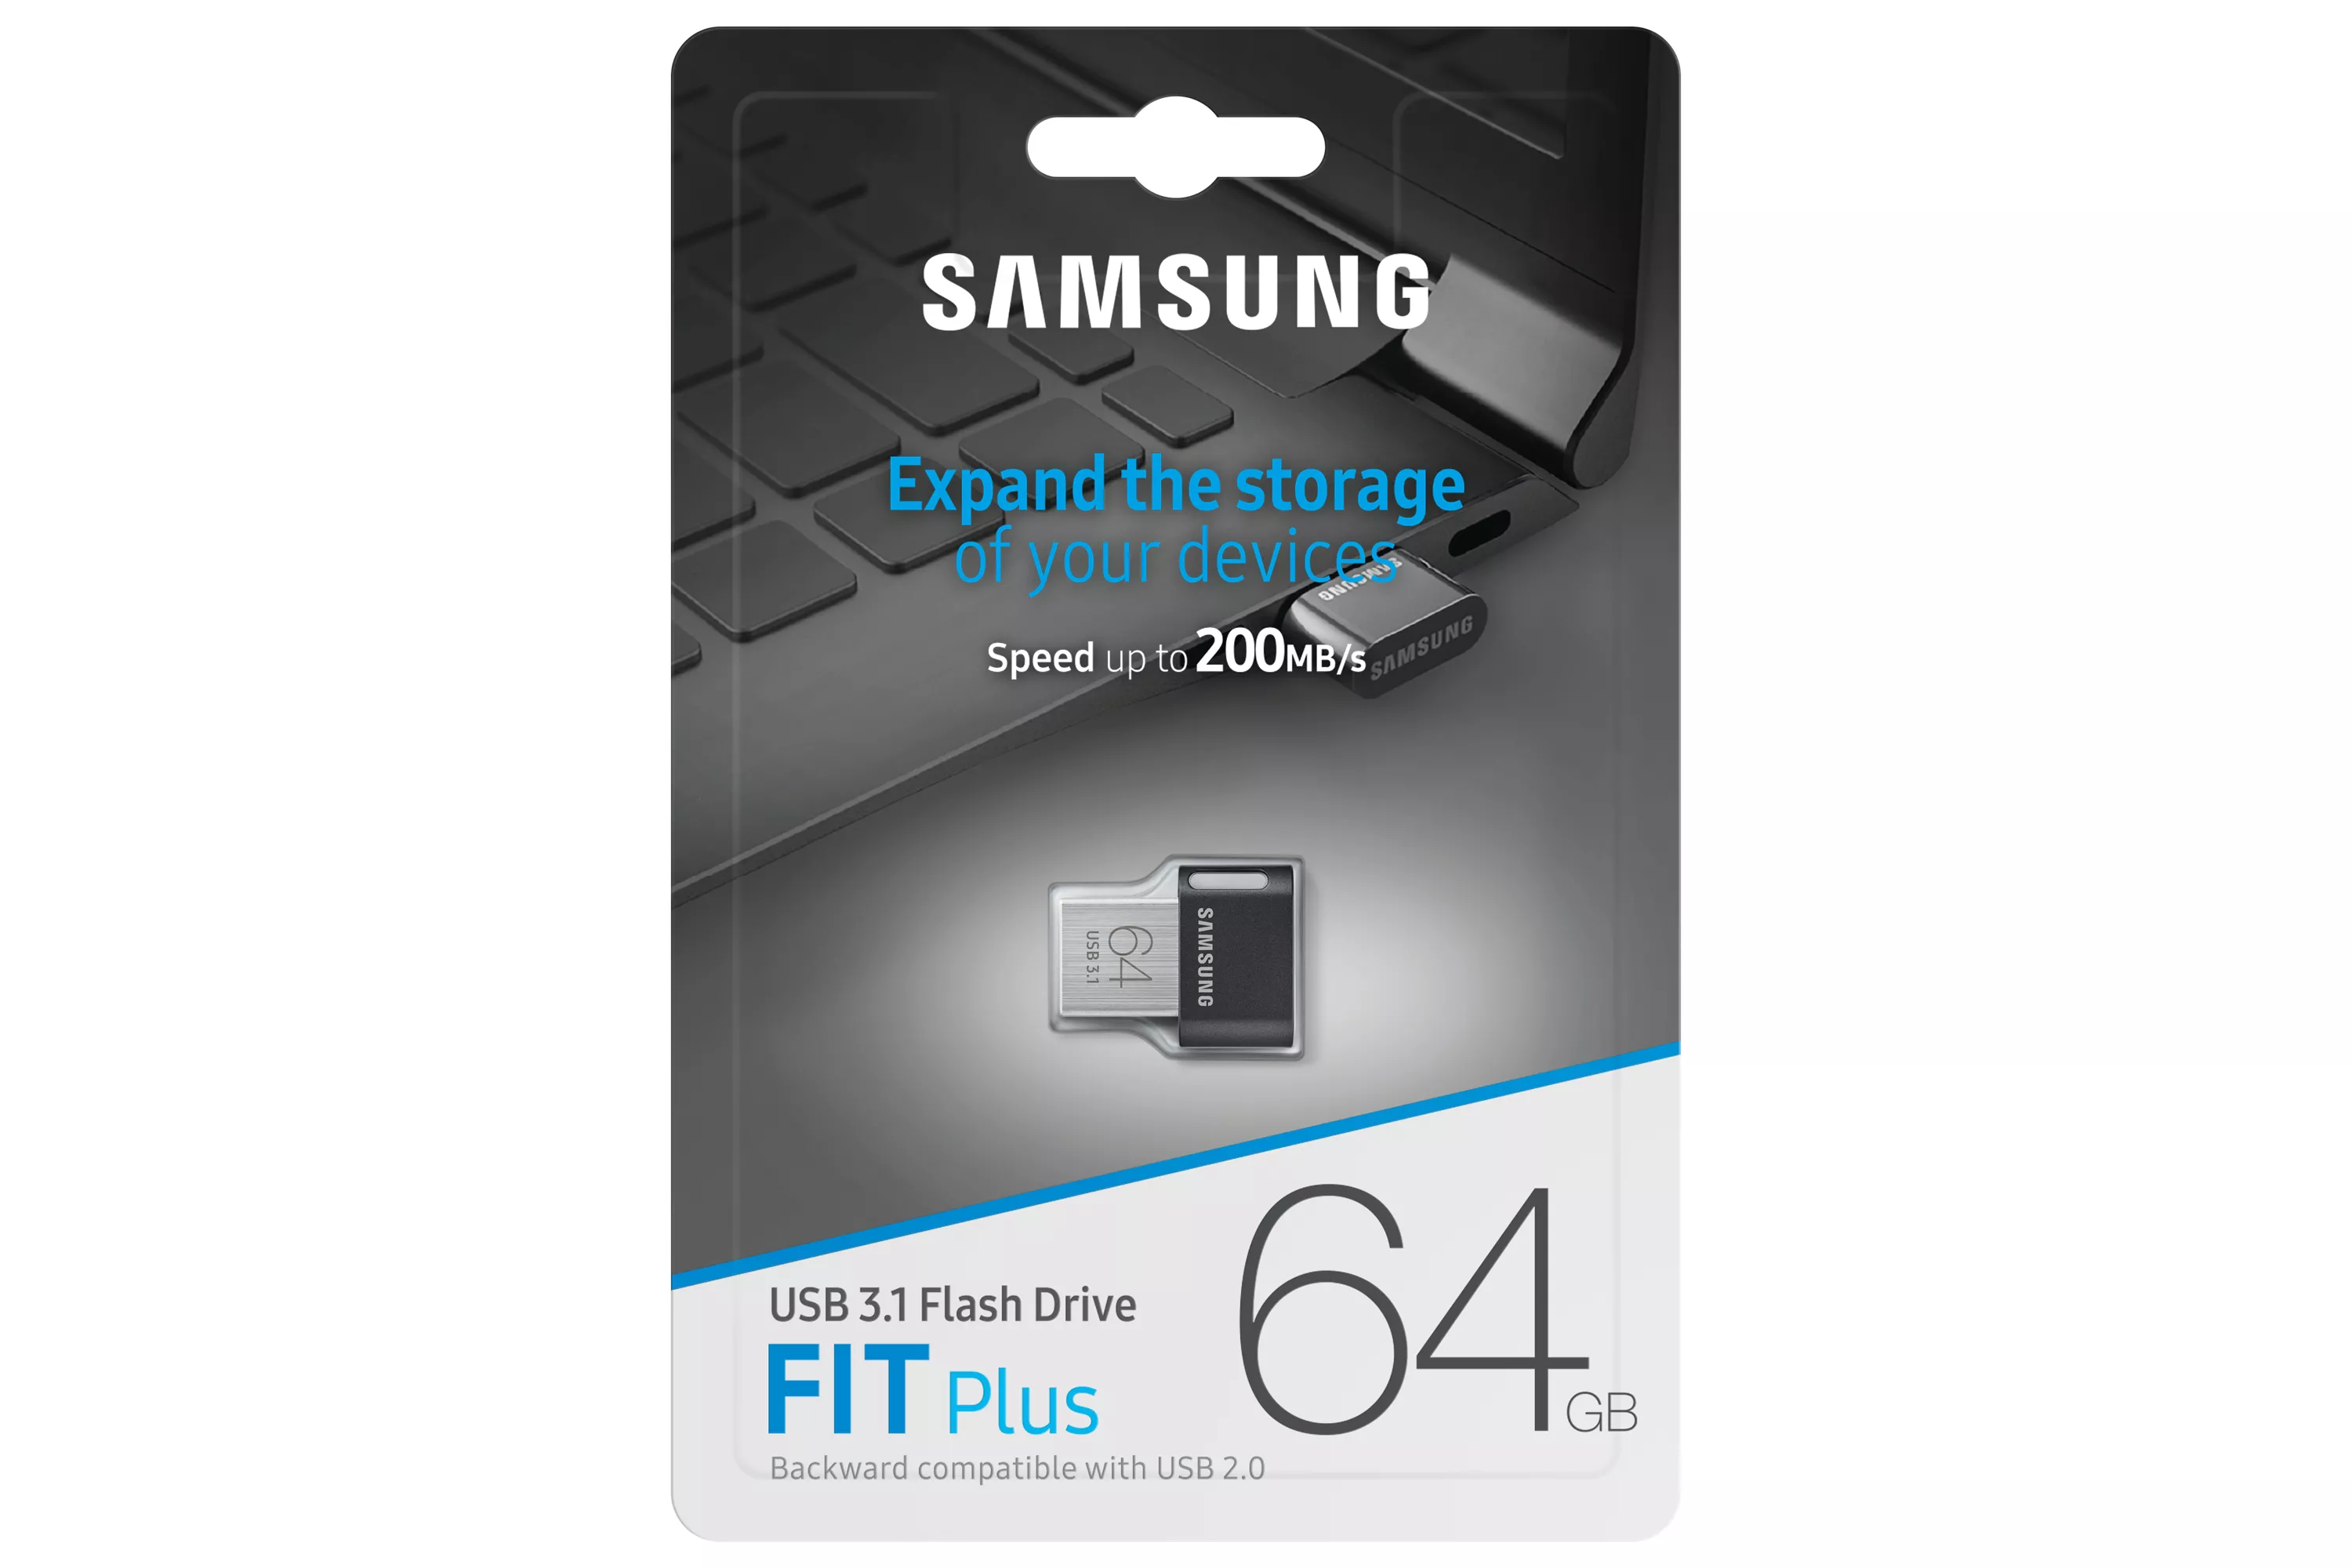 Achat SAMSUNG FIT PLUS 64Go USB 3.1 sur hello RSE - visuel 7